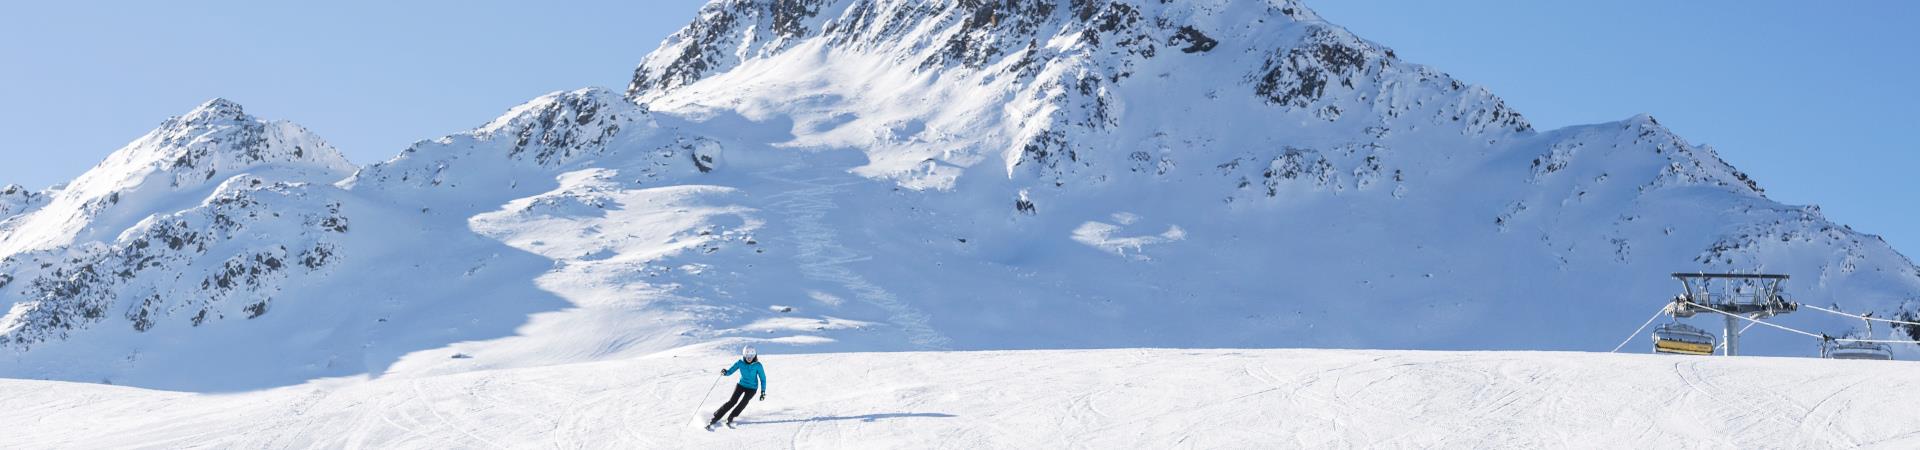 Skifahrerin+auf+Piste+mit+einem+Berg+im+Hintergrund